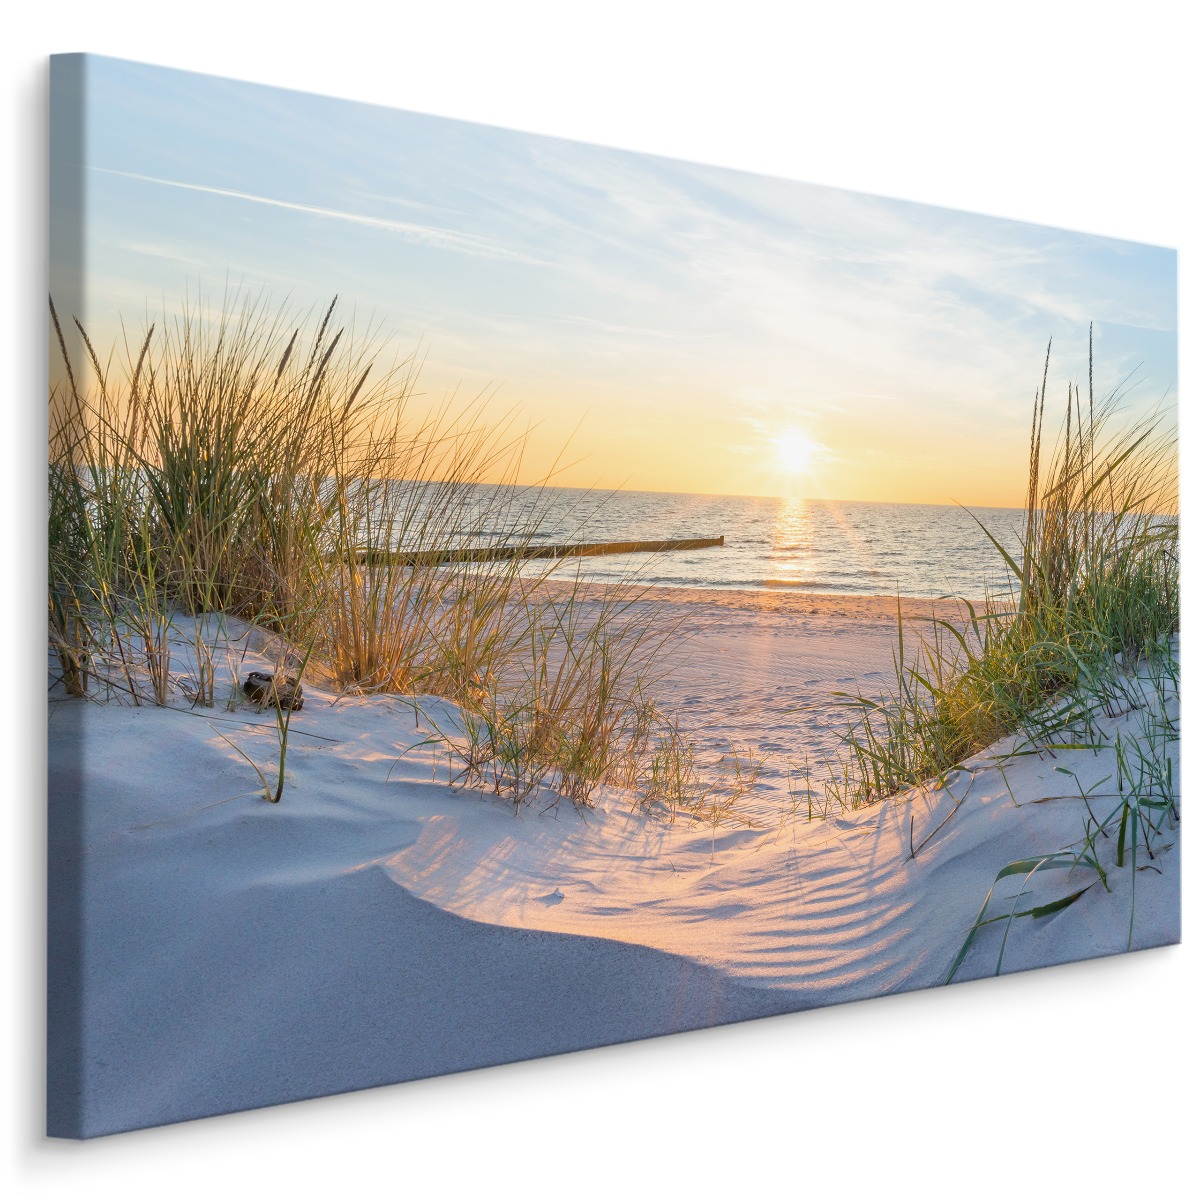 Leinwand-Bilder 100x50 Wandbild Canvas Kunstdruck Sonne Meer Fischer Landschaft 